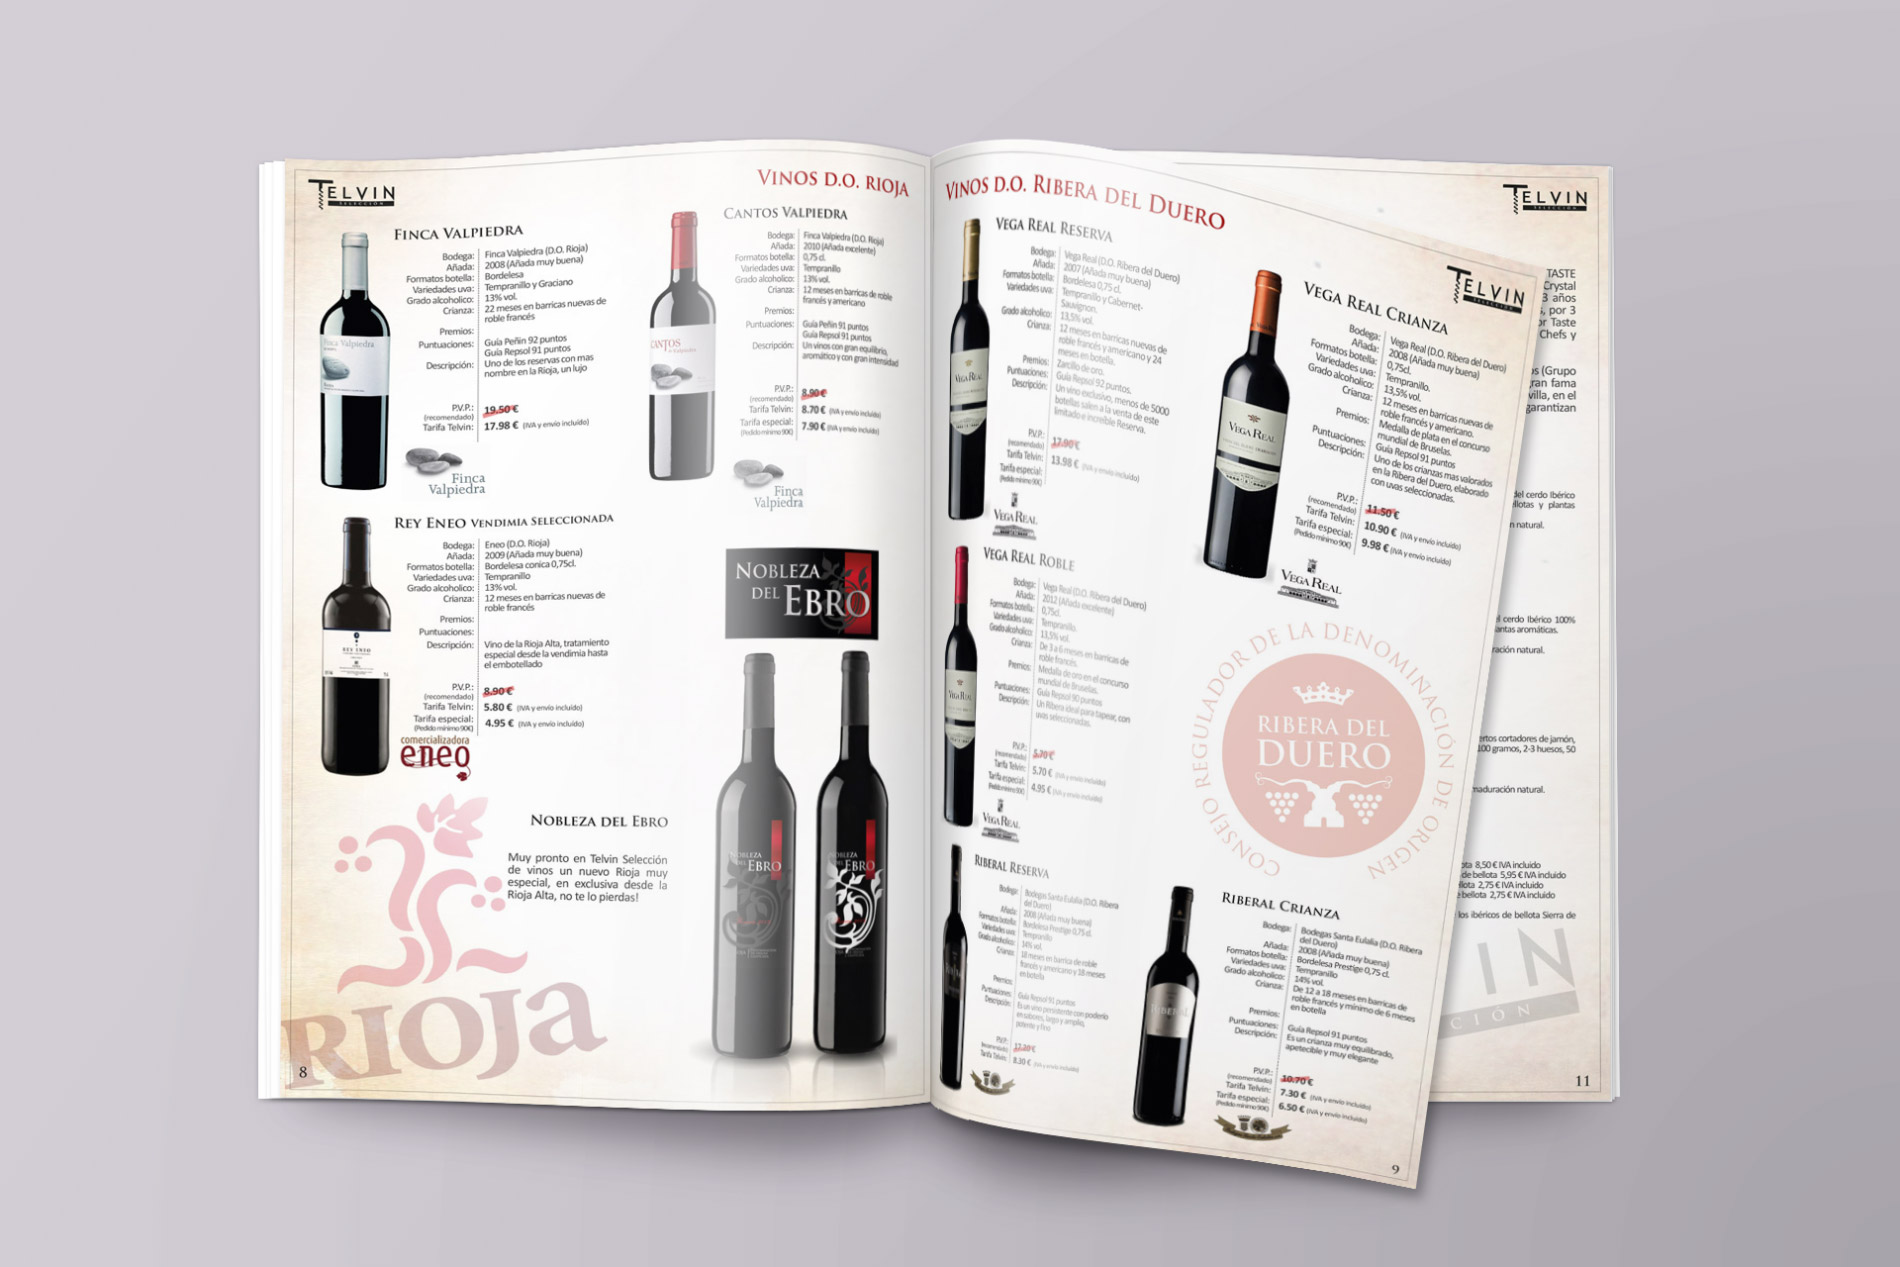 Diseño de logo, marca, imagen corporativa y catálogos para vinos y bodegas Telvin Aragón